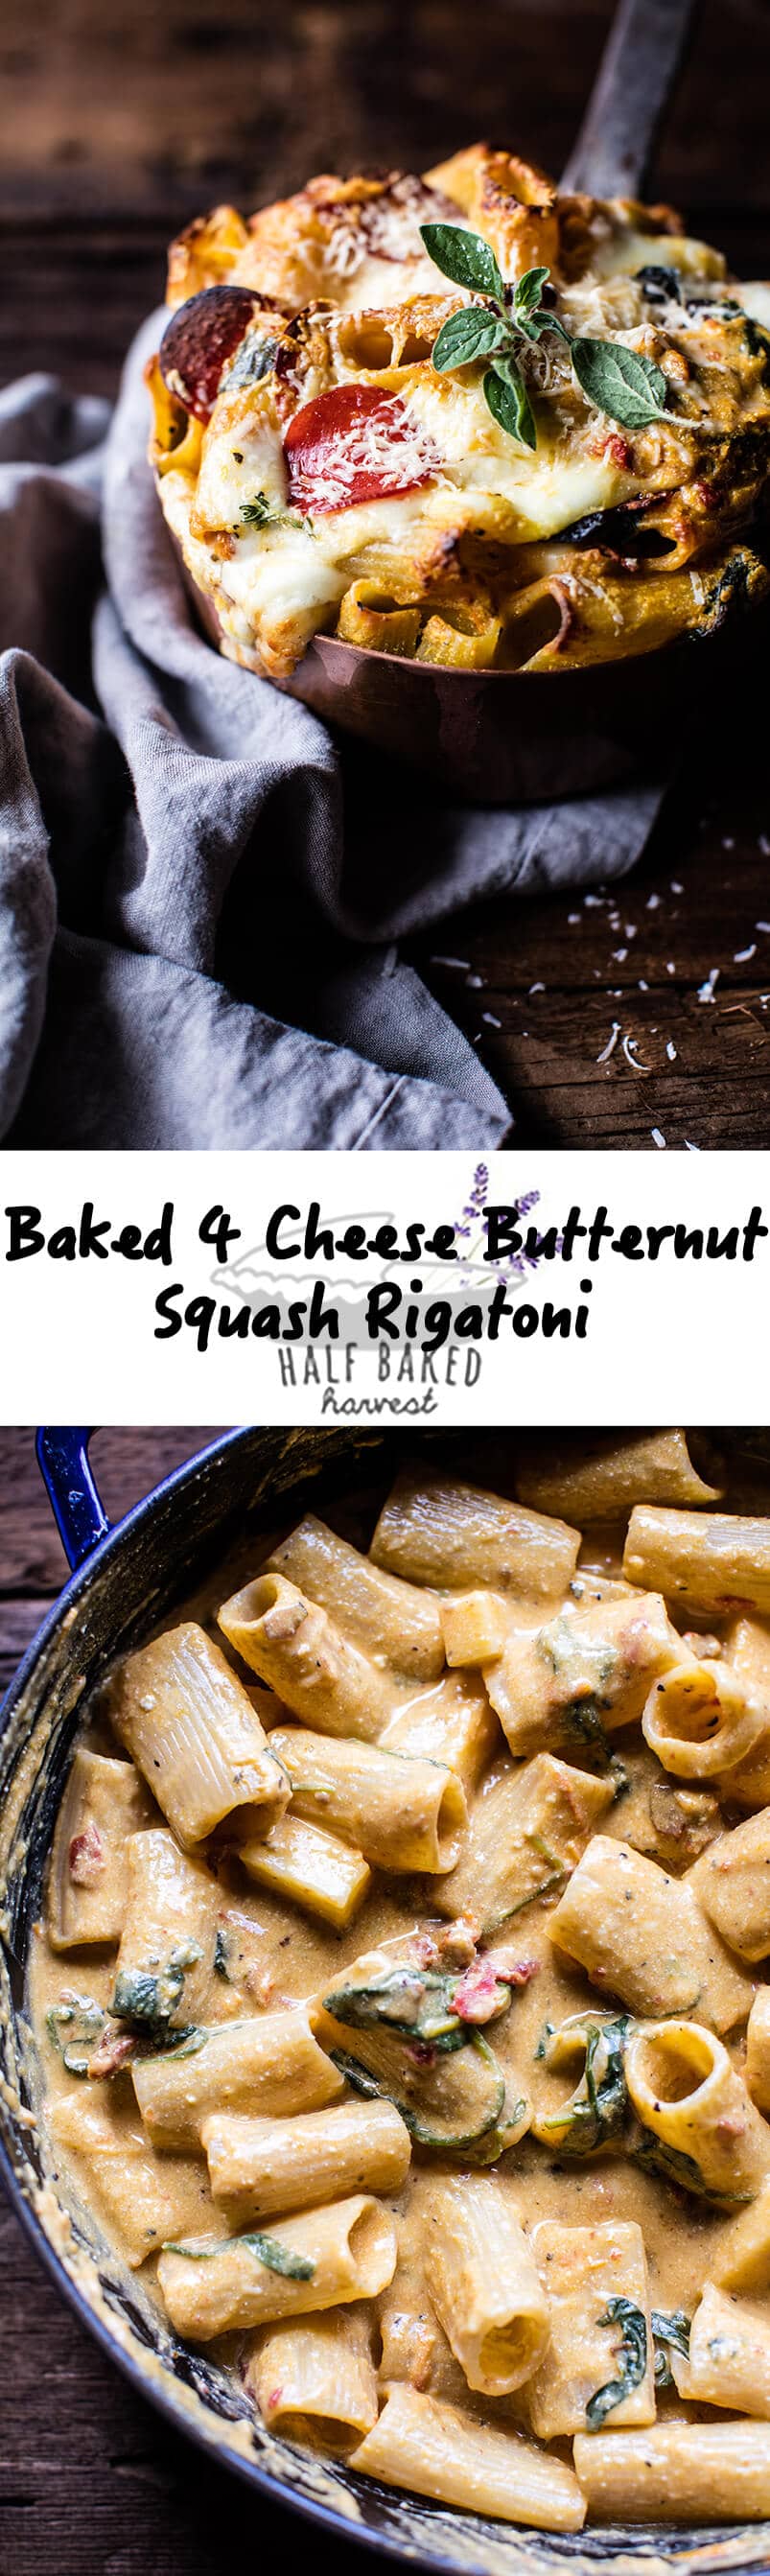 Baked 4 Cheese Butternut Squash Rigatoni | halfbakedharvest.com @hbharvest